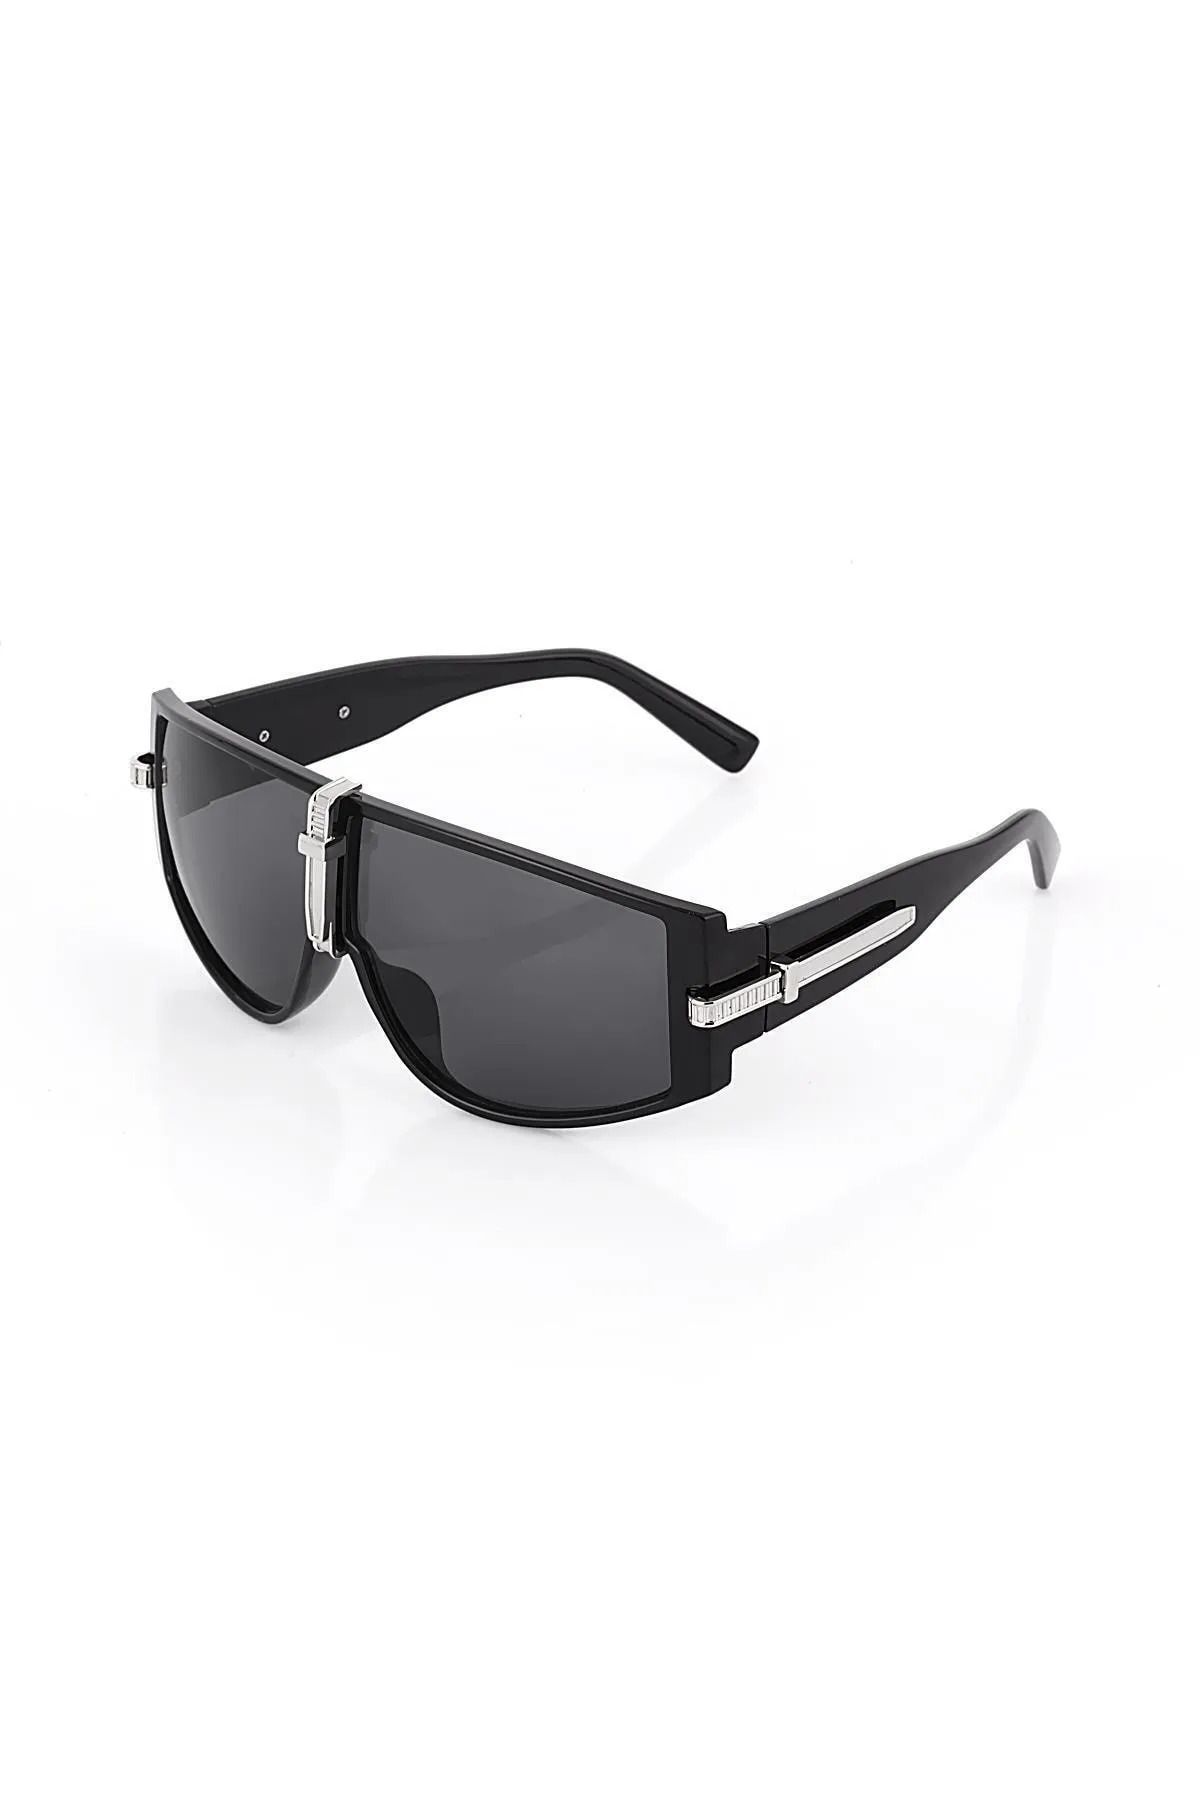 Angel Eyes UV400 Koruma Gümüş-Siyah Kayak/Snowboard Gözlüğü